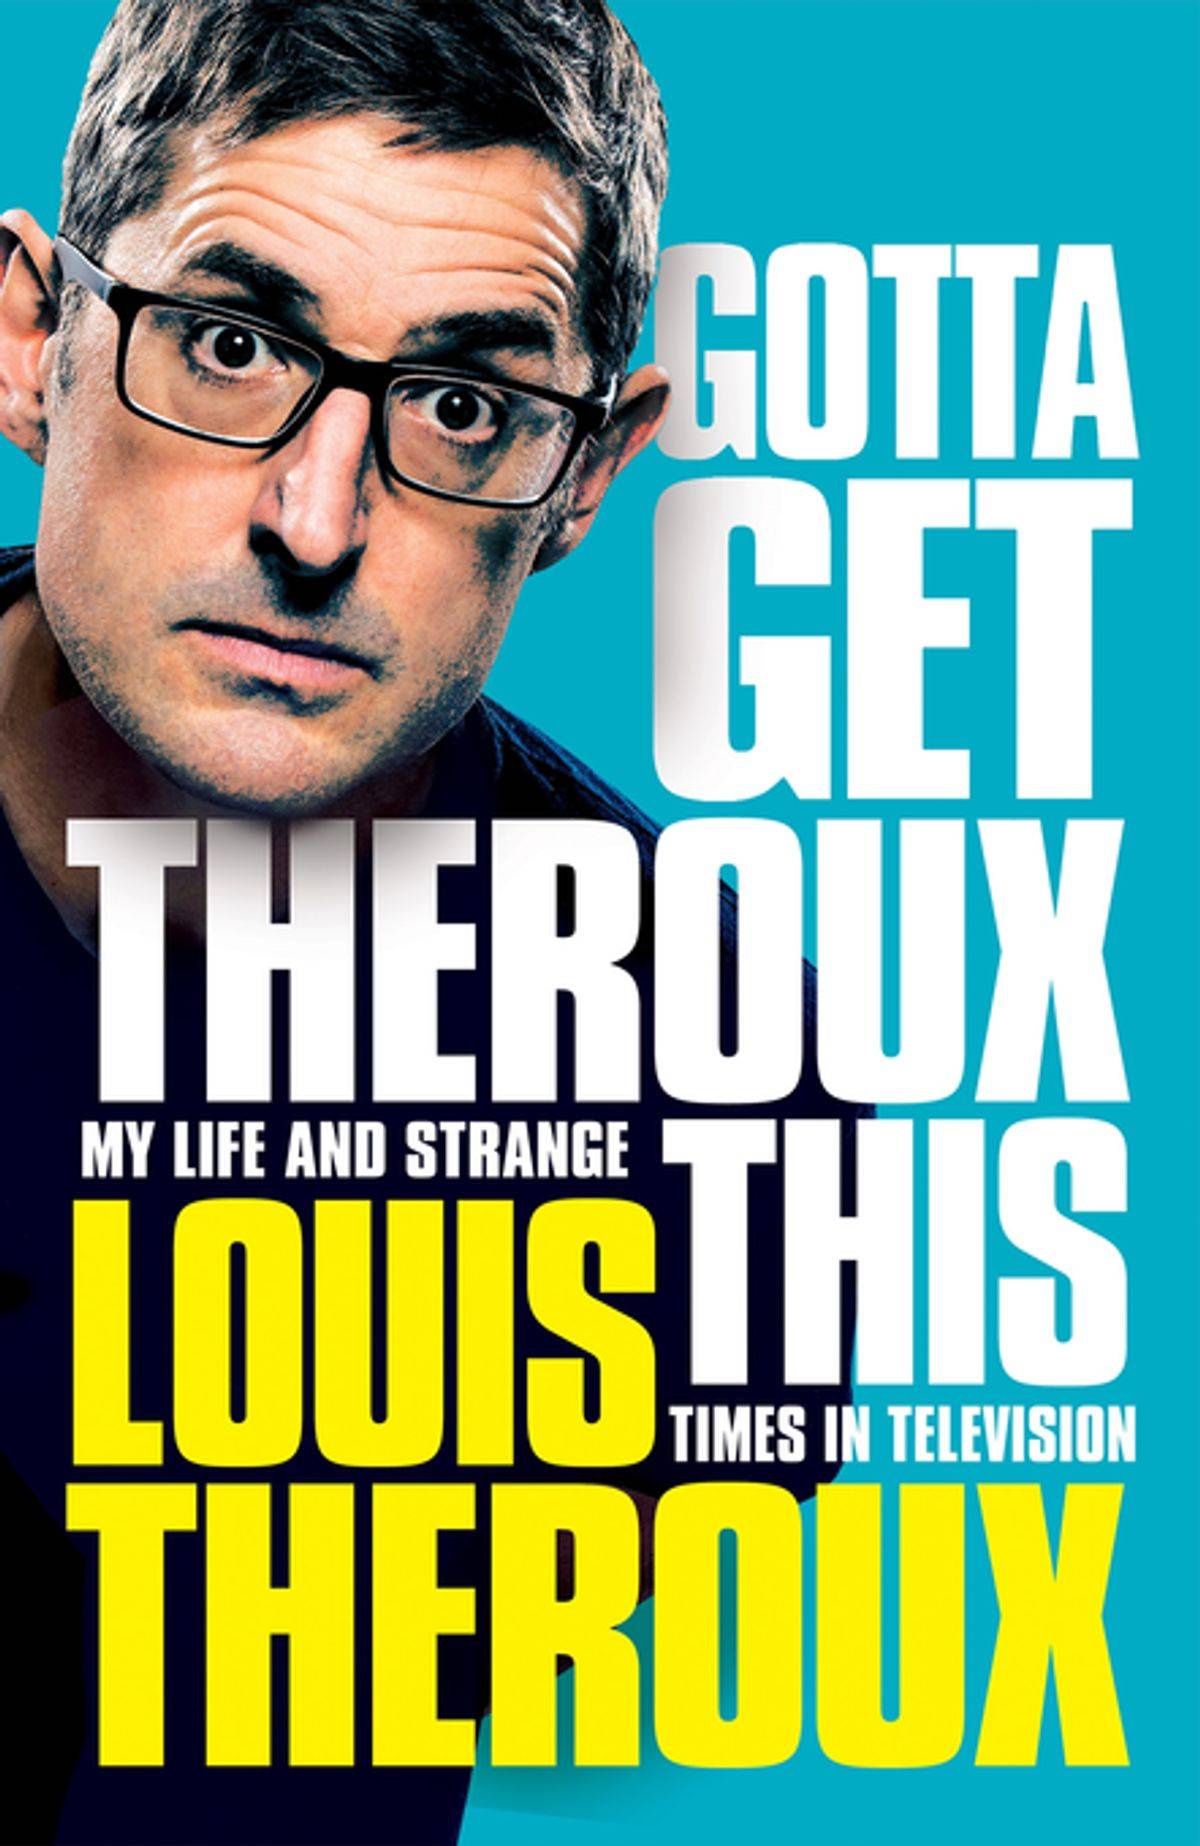 Louis Theroux memoir